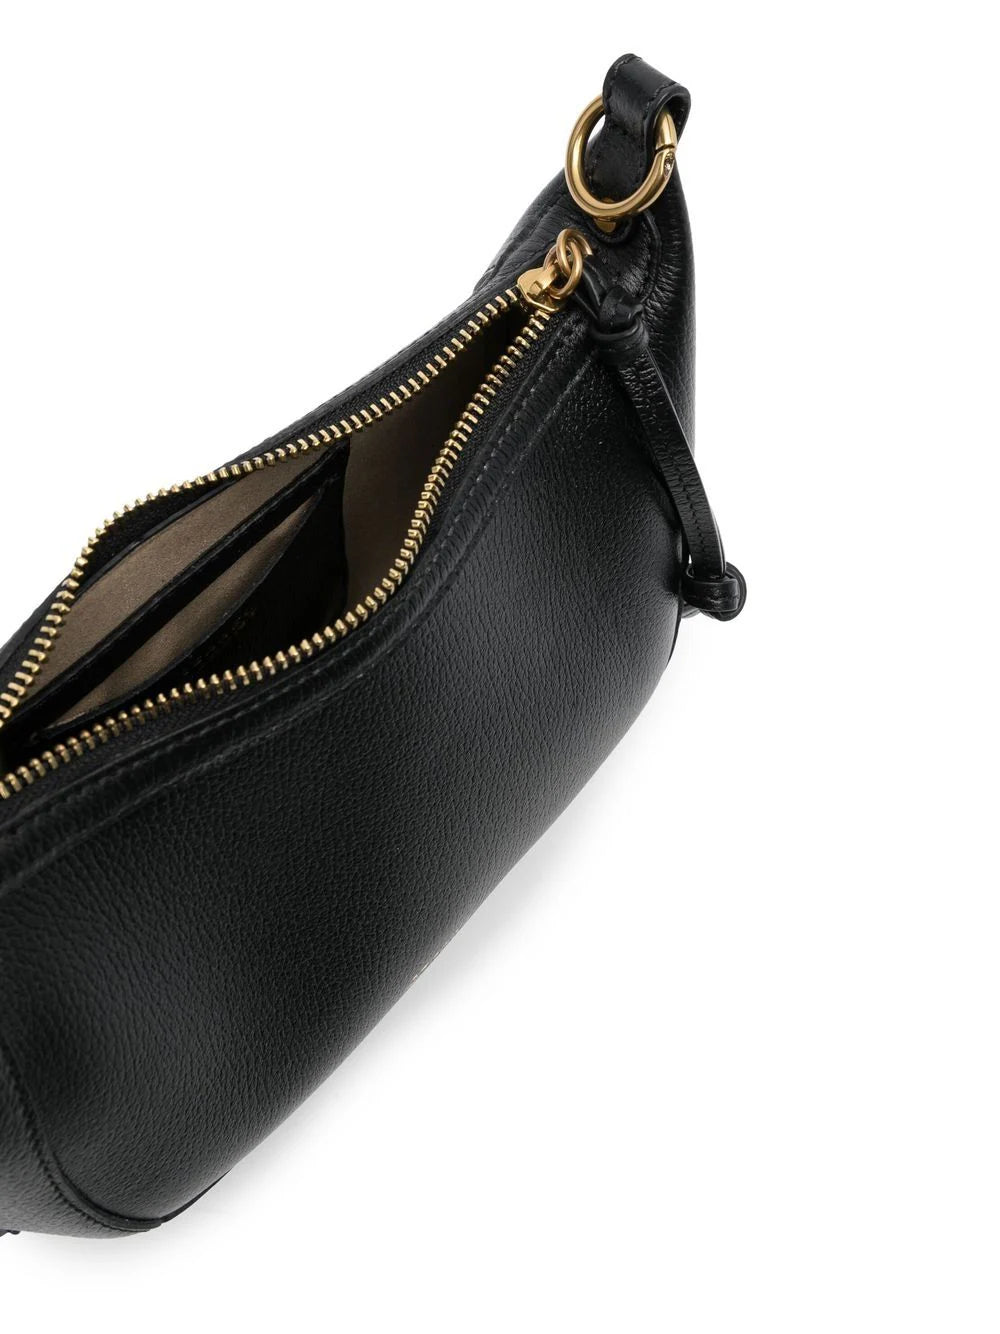 OSKAN MOON handbag, black